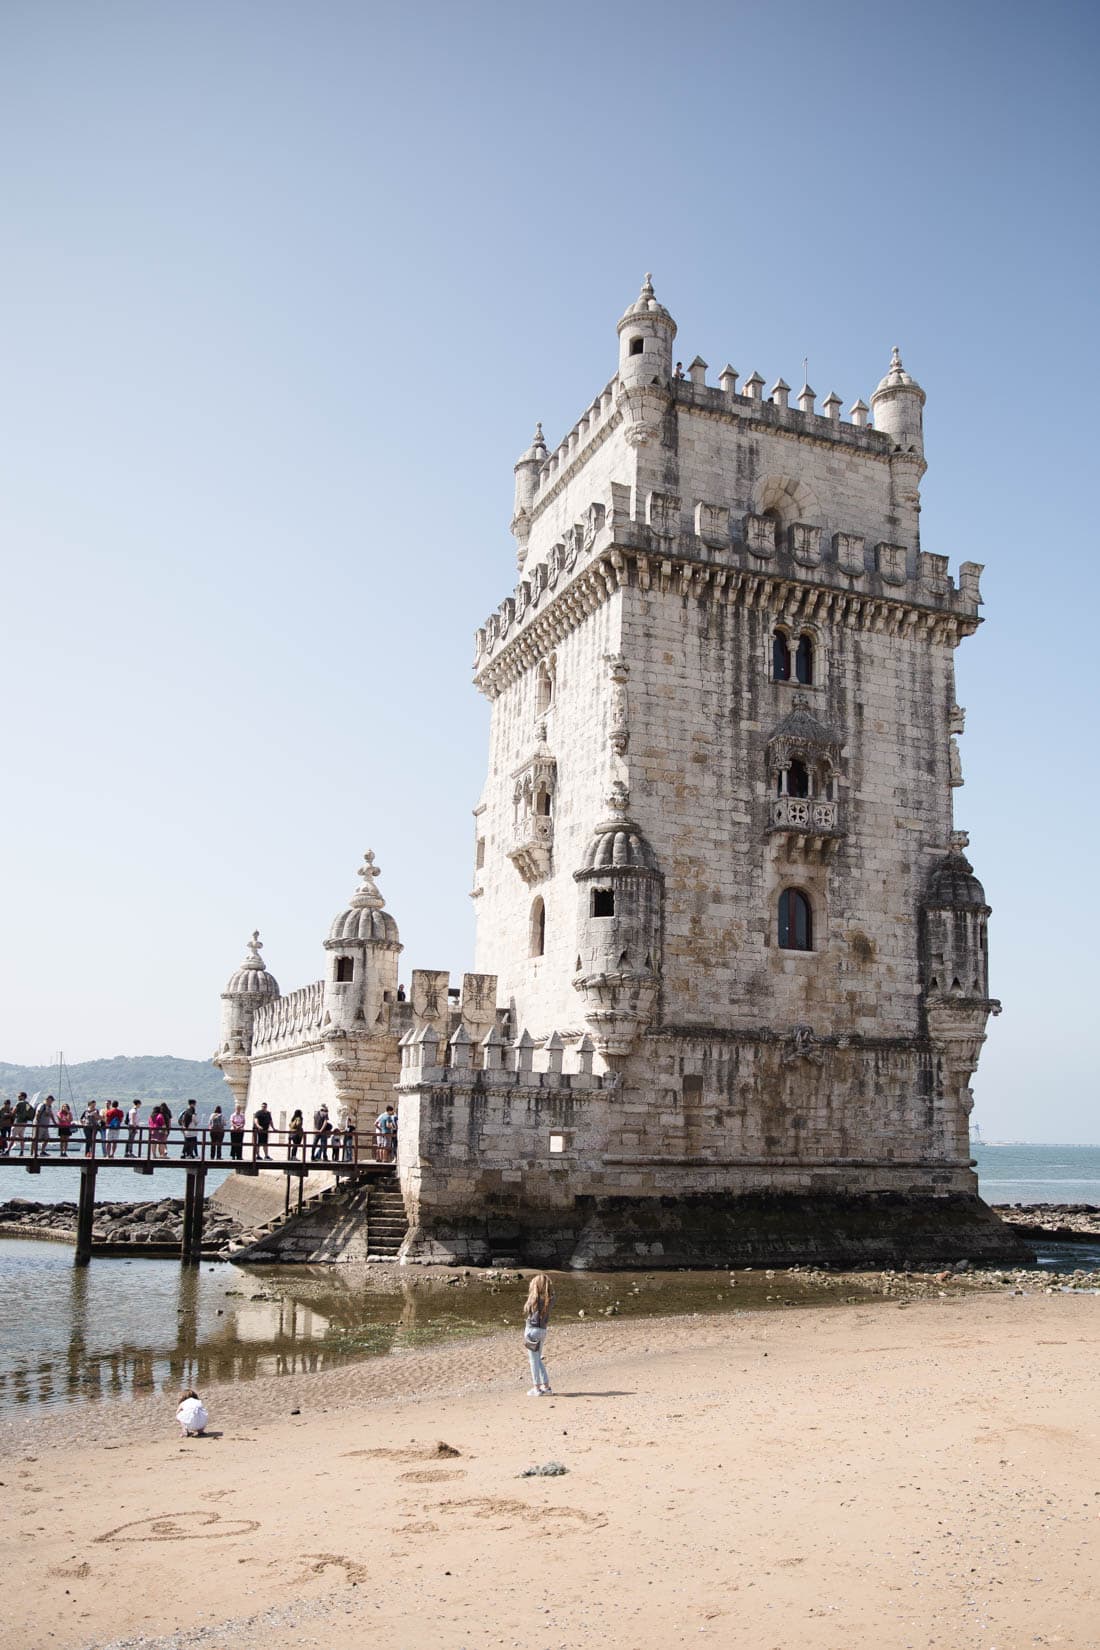 Belem Tower Lisbon